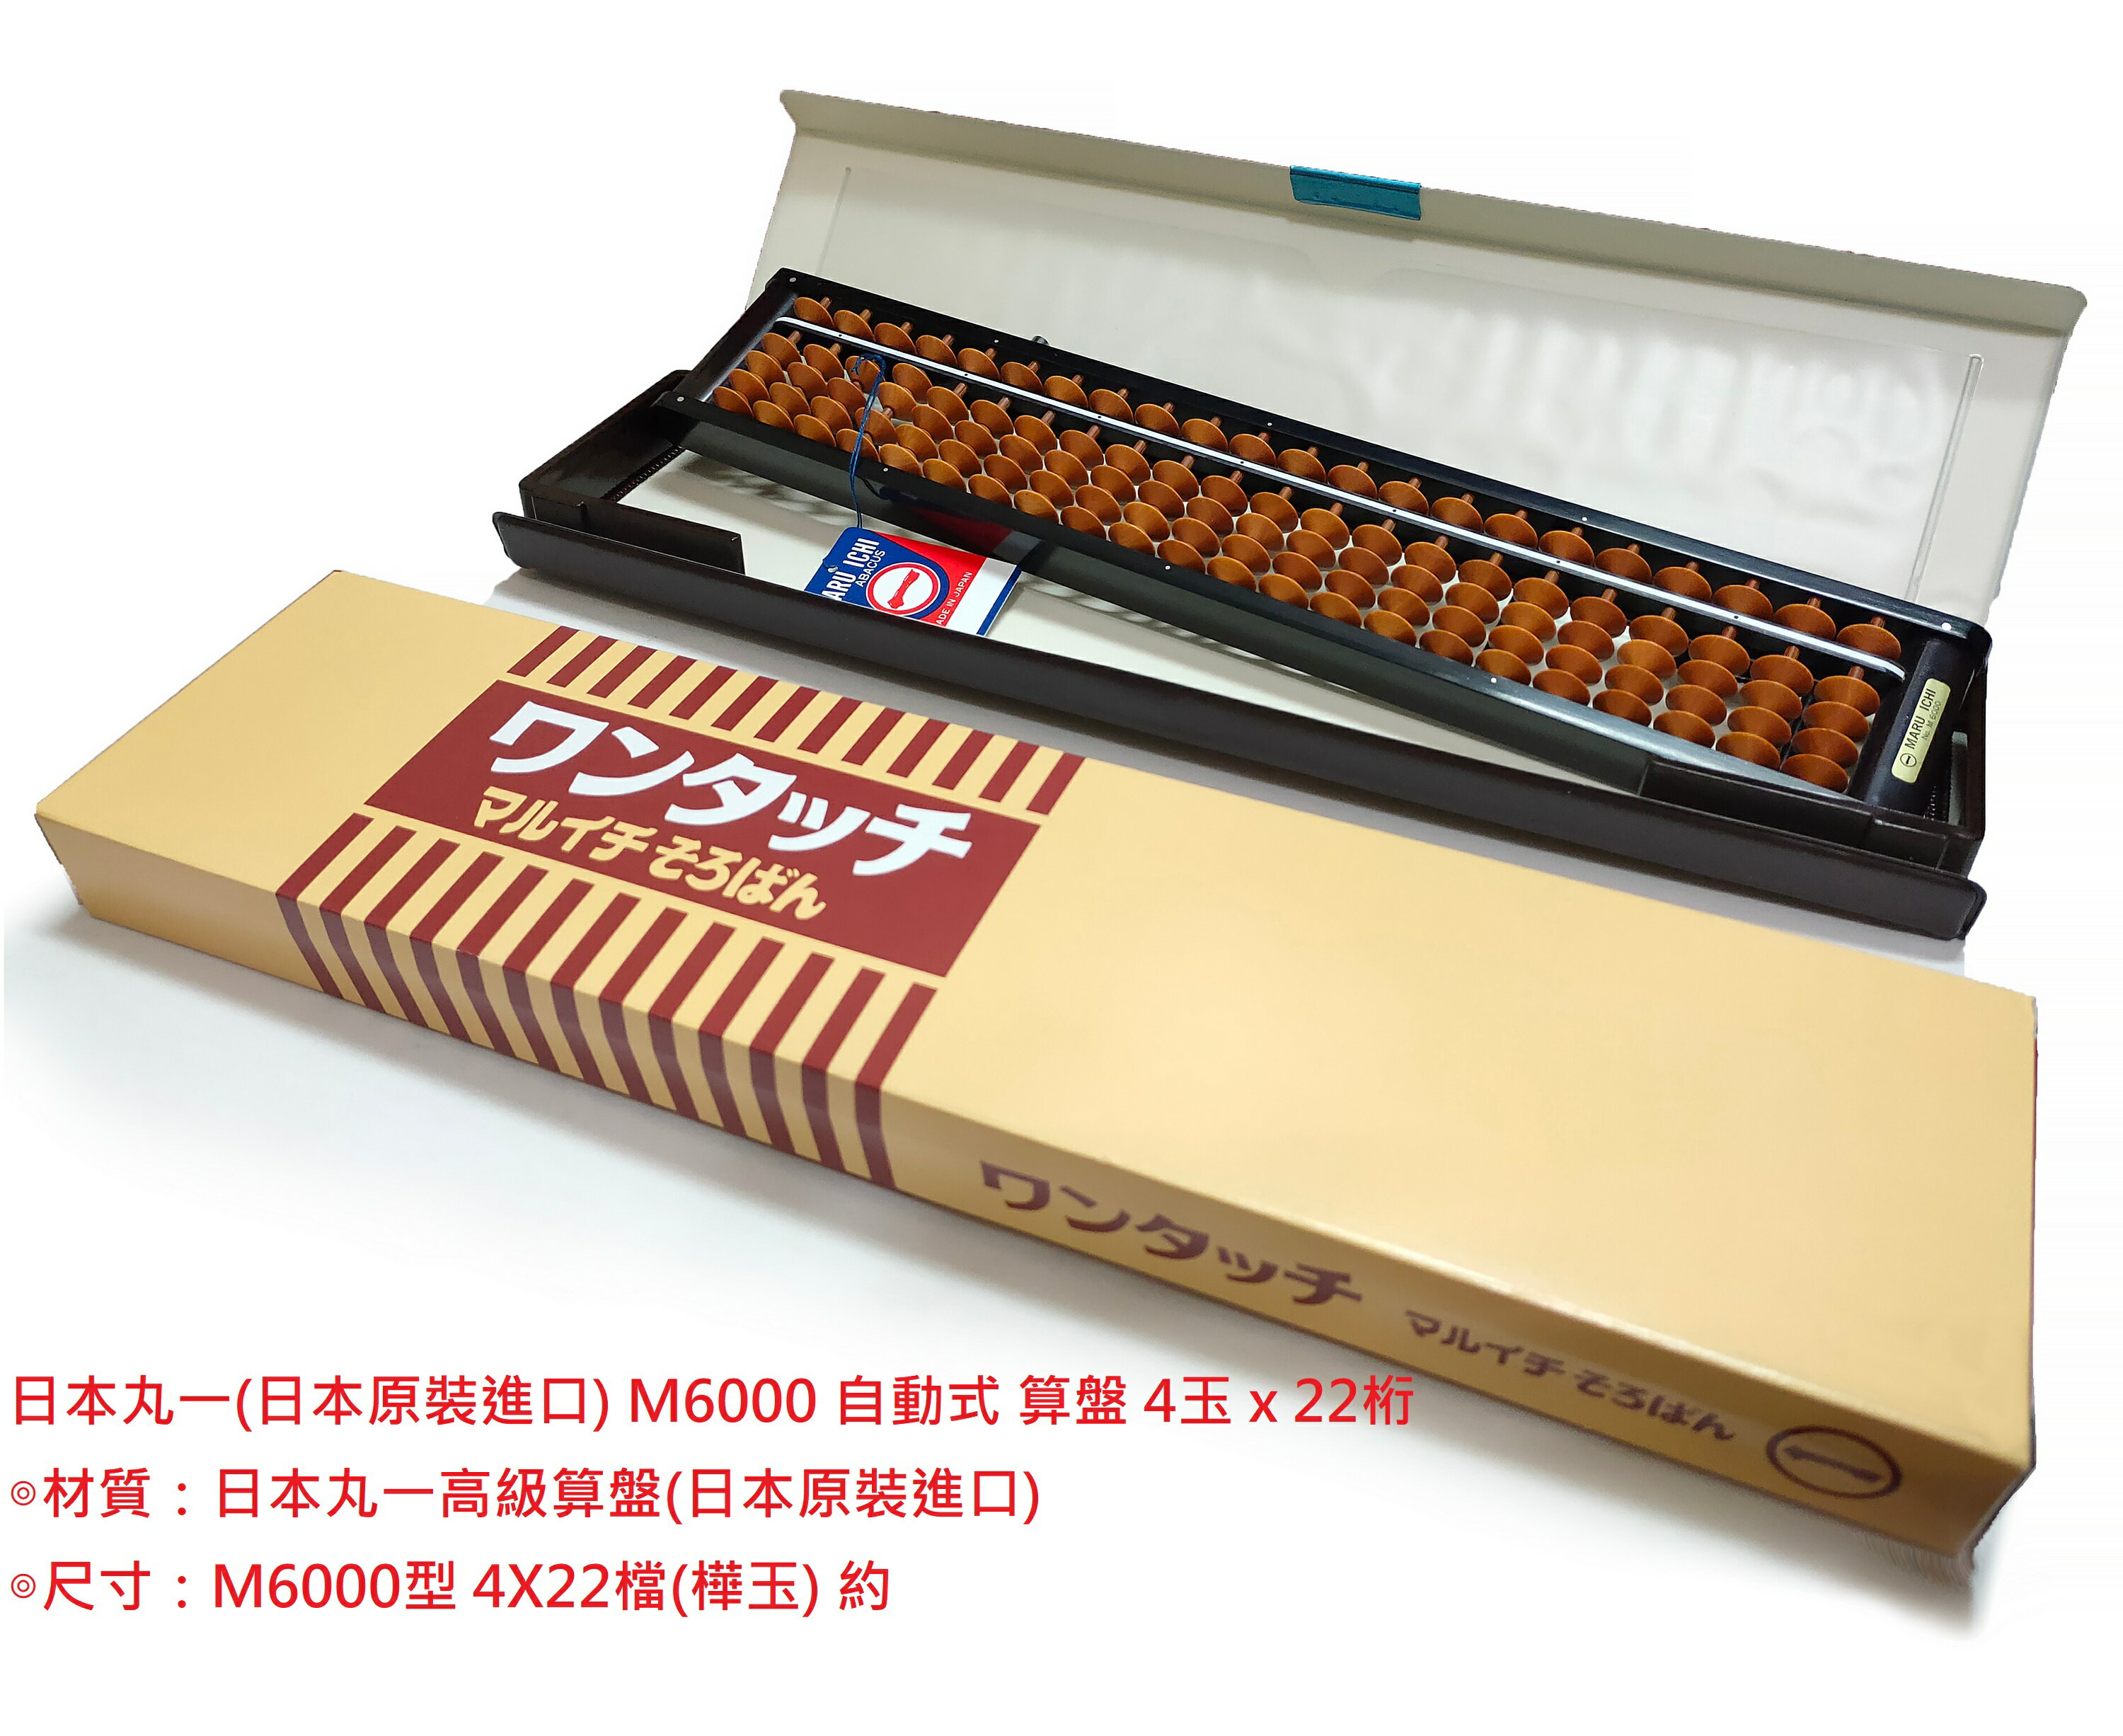 【文具通】日本製 丸一 M6000 自動式 算盤 4x22檔 樺玉 B2020010